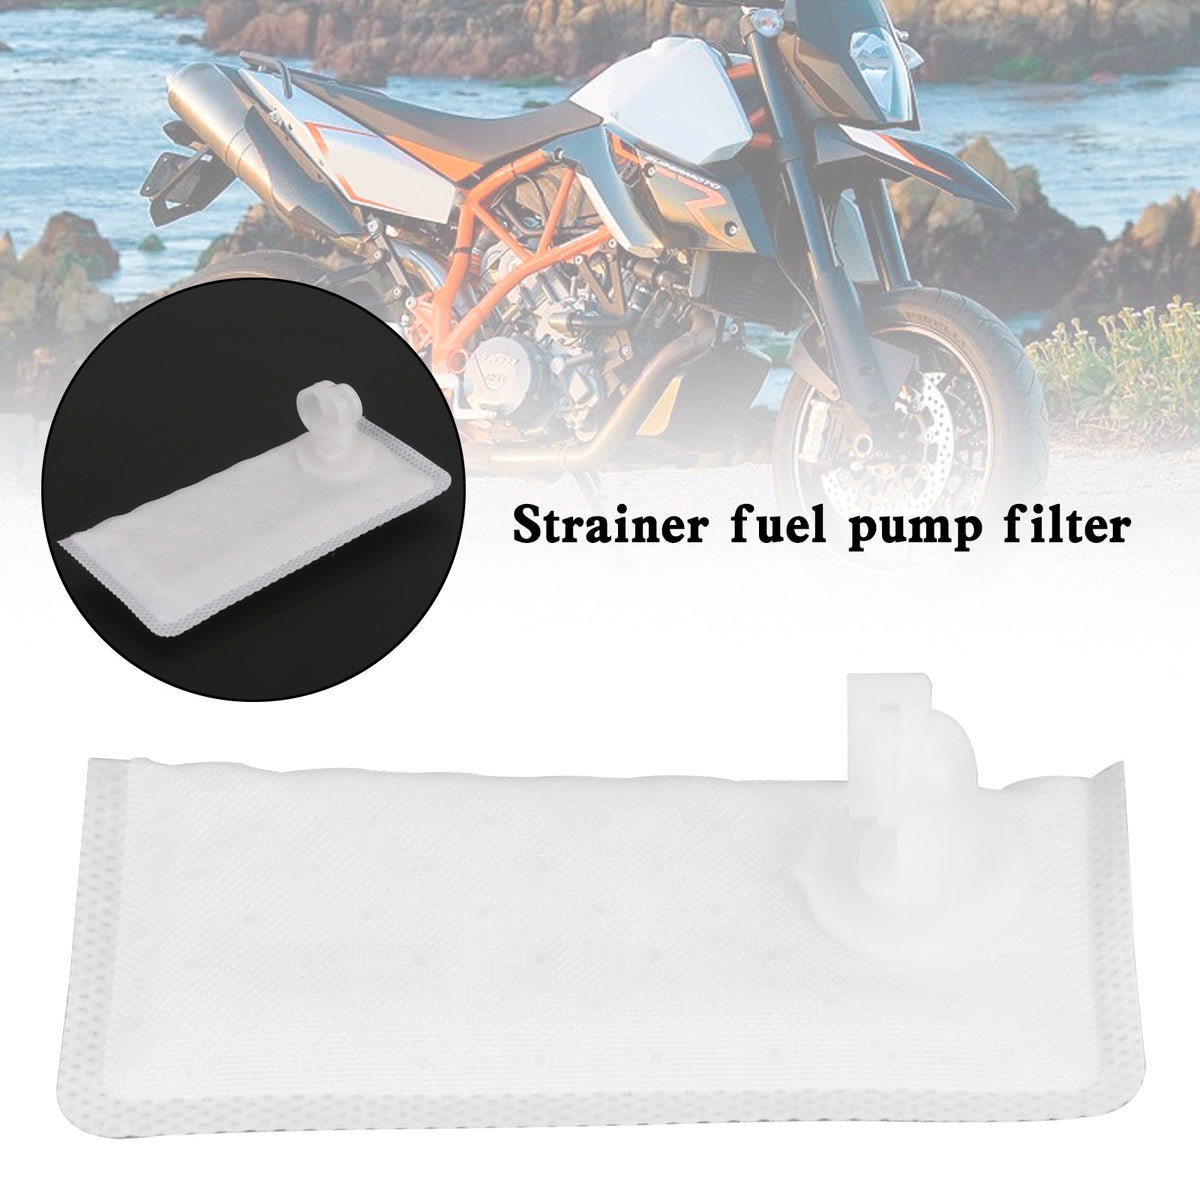 Strainer fuel pump filter For Super Adventure R2R Brabus 990 1050 1090 1290 1300